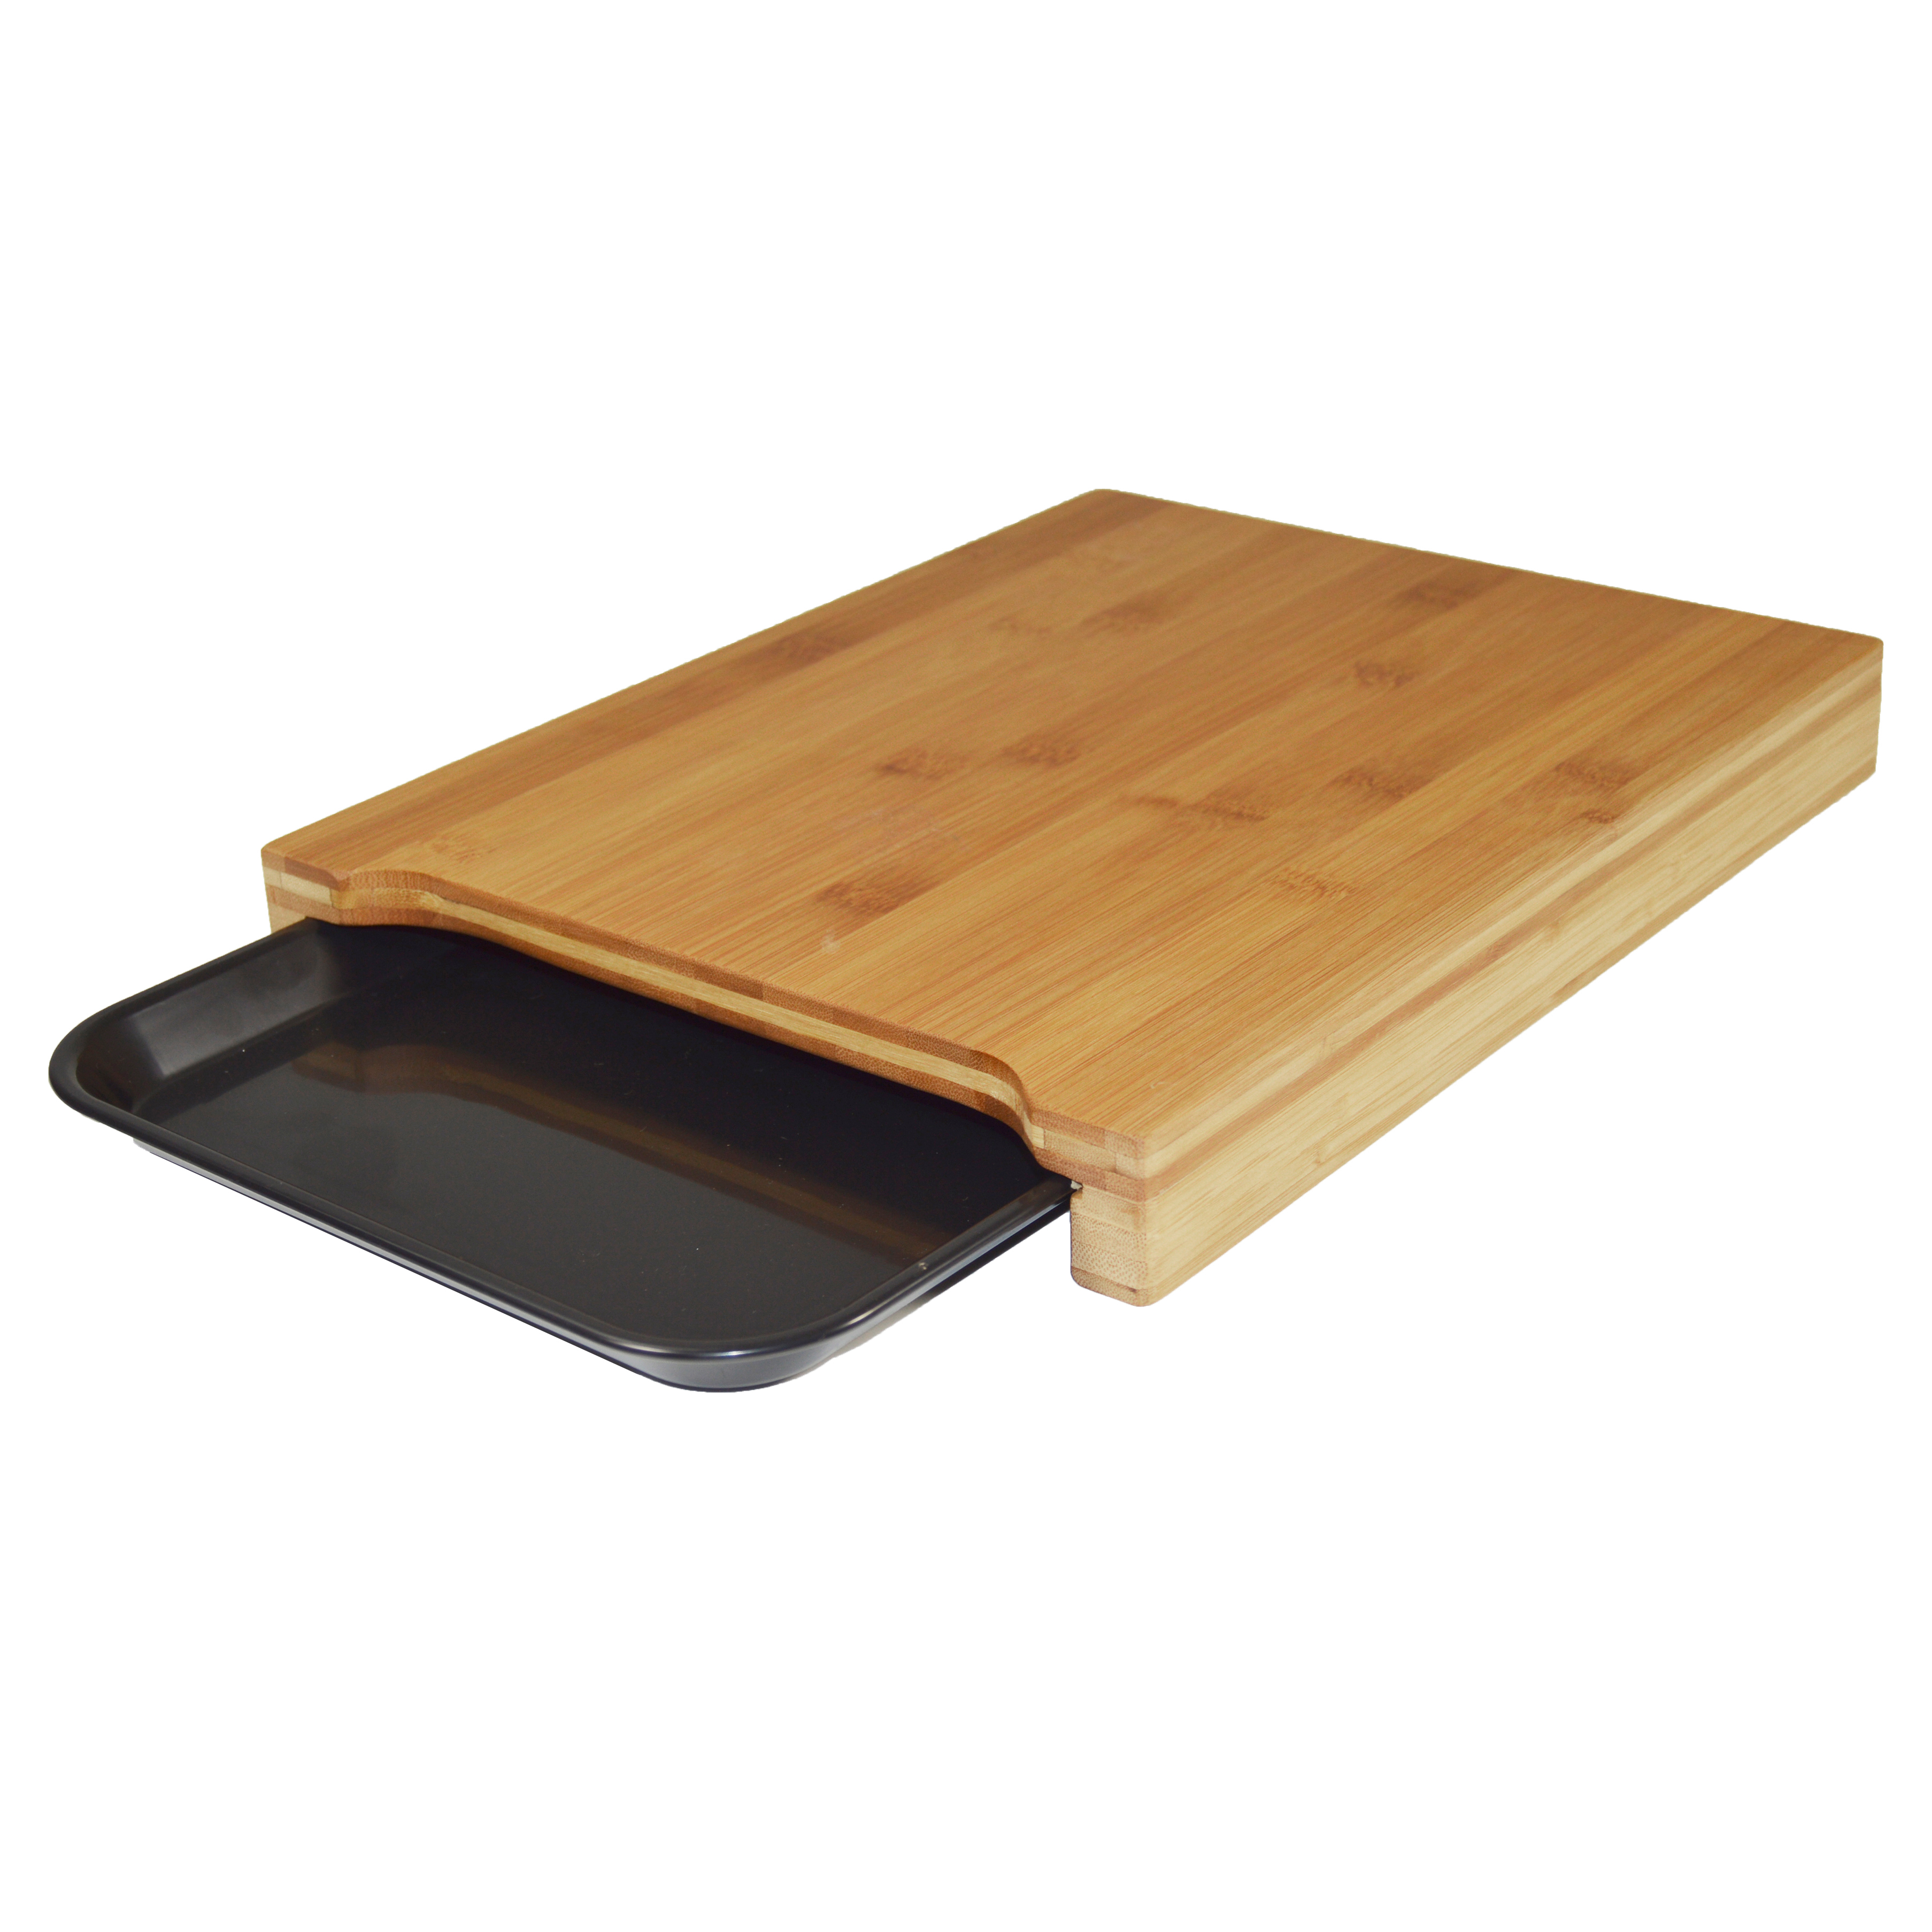 Jocca - Robusta tabla de cortar Jocca hecha de bambú con práctica bandeja lateral para depositar la comida en color negro. Ideal para ahorrar espacio en la cocina. Atractivo plato de presentación.